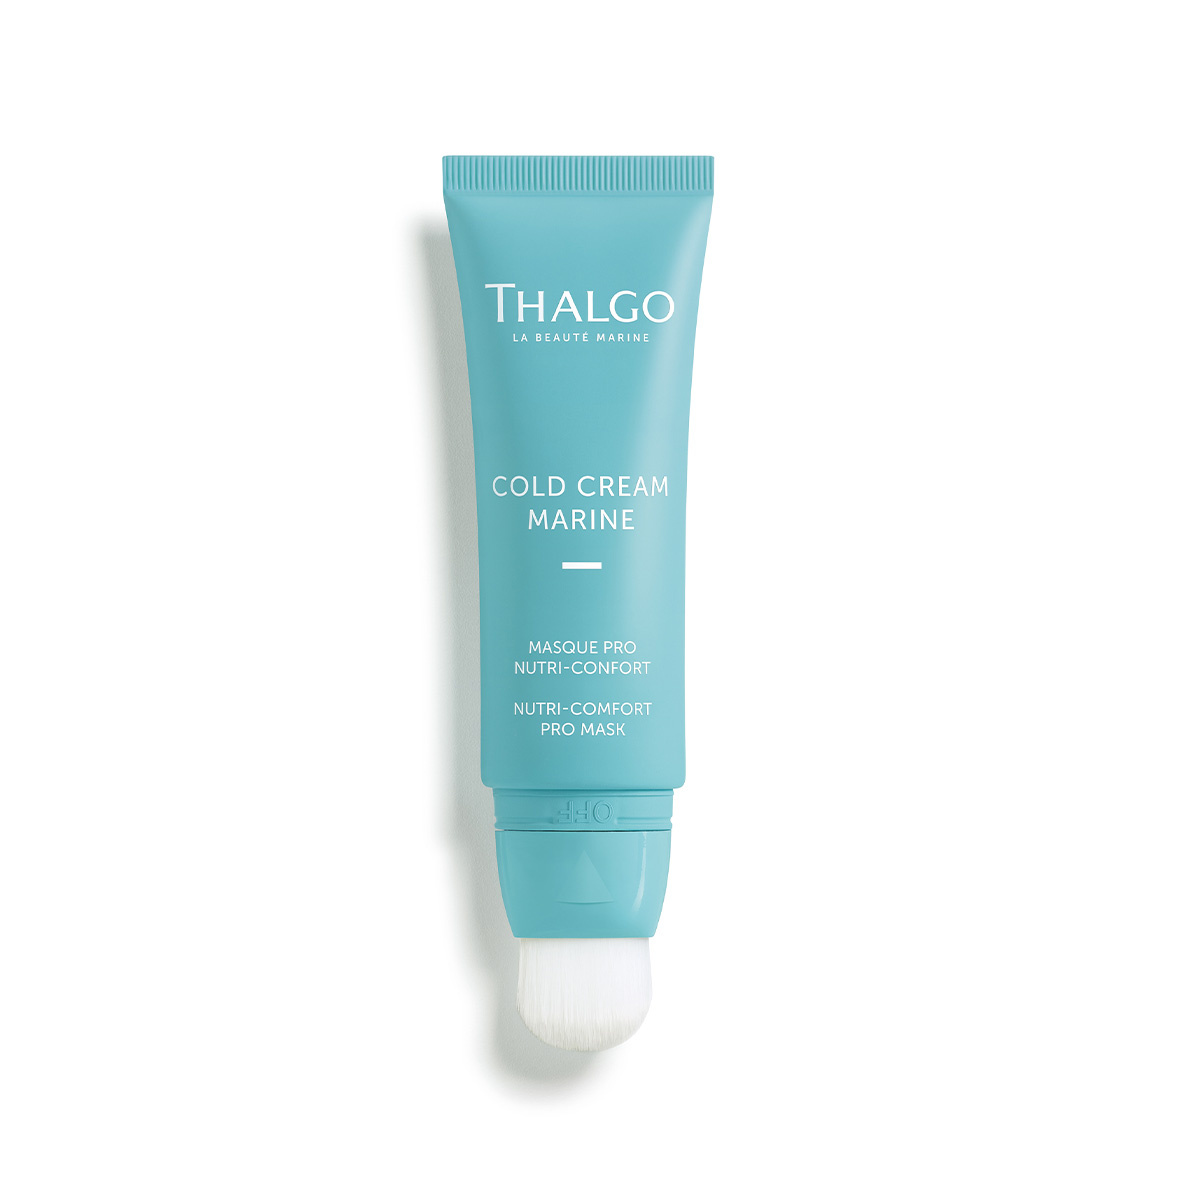 Thalgo Thalgo Gold Cream Nutri Pro Mask 50ml